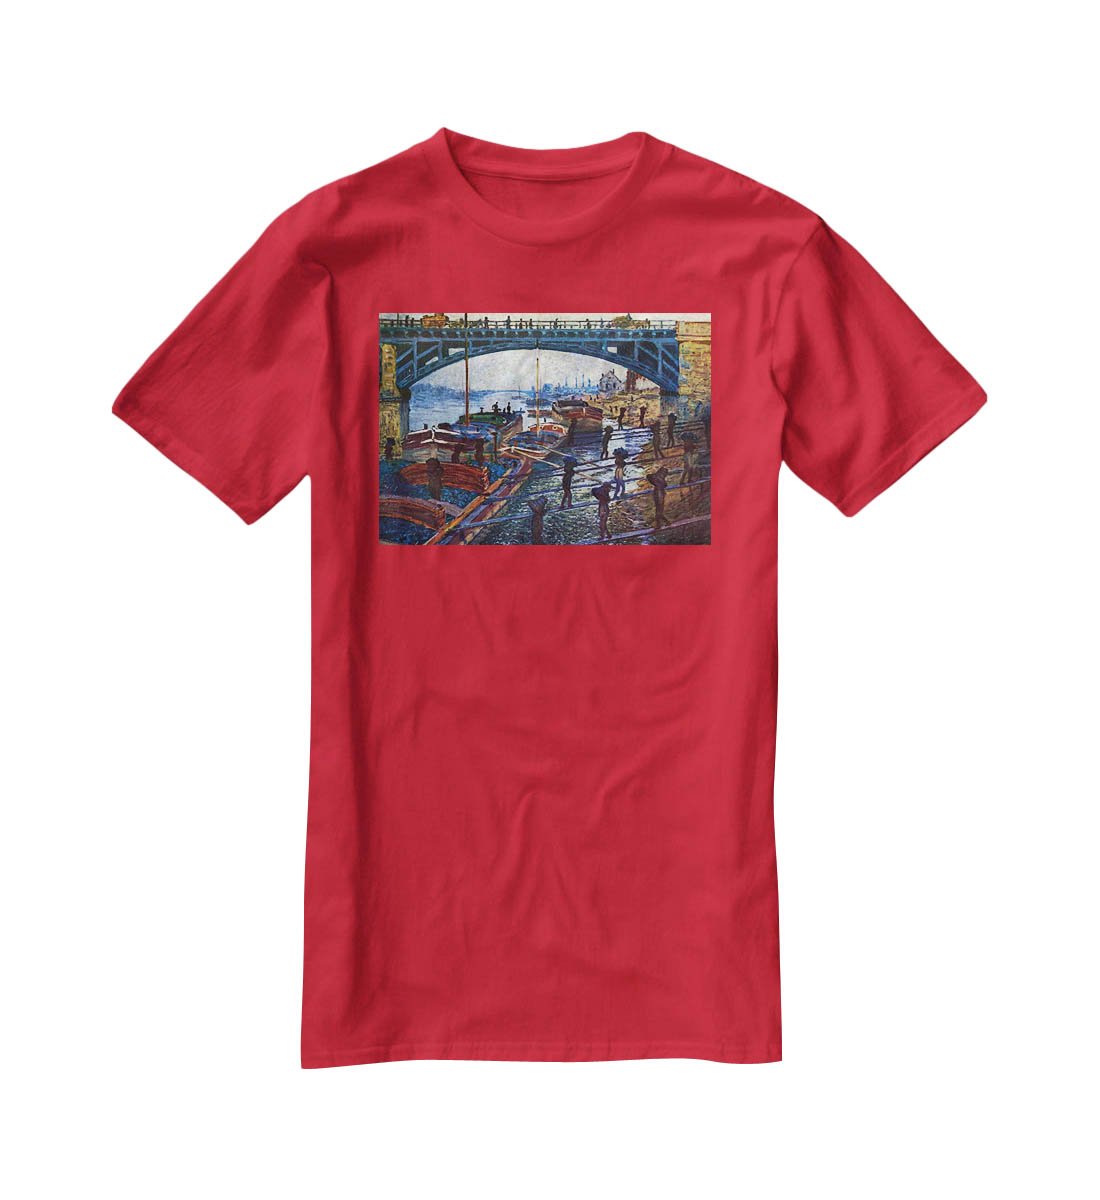 The coal carrier by Monet T-Shirt - Canvas Art Rocks - 4